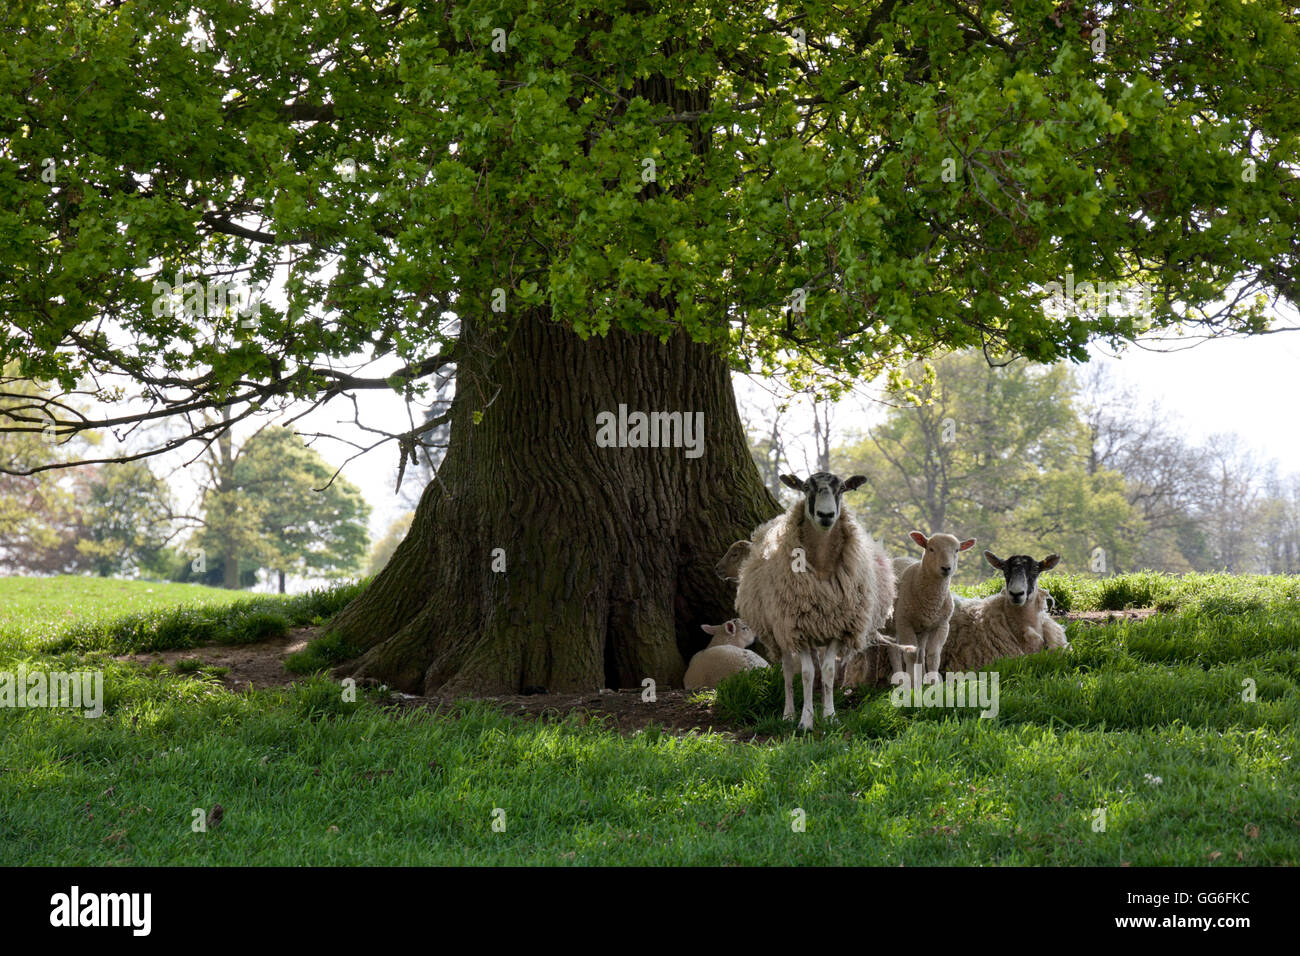 Les brebis et les agneaux à l'ombre de l'arbre de chêne, Chipping Campden, Cotswolds, Gloucestershire, Angleterre, Royaume-Uni, Europe Banque D'Images